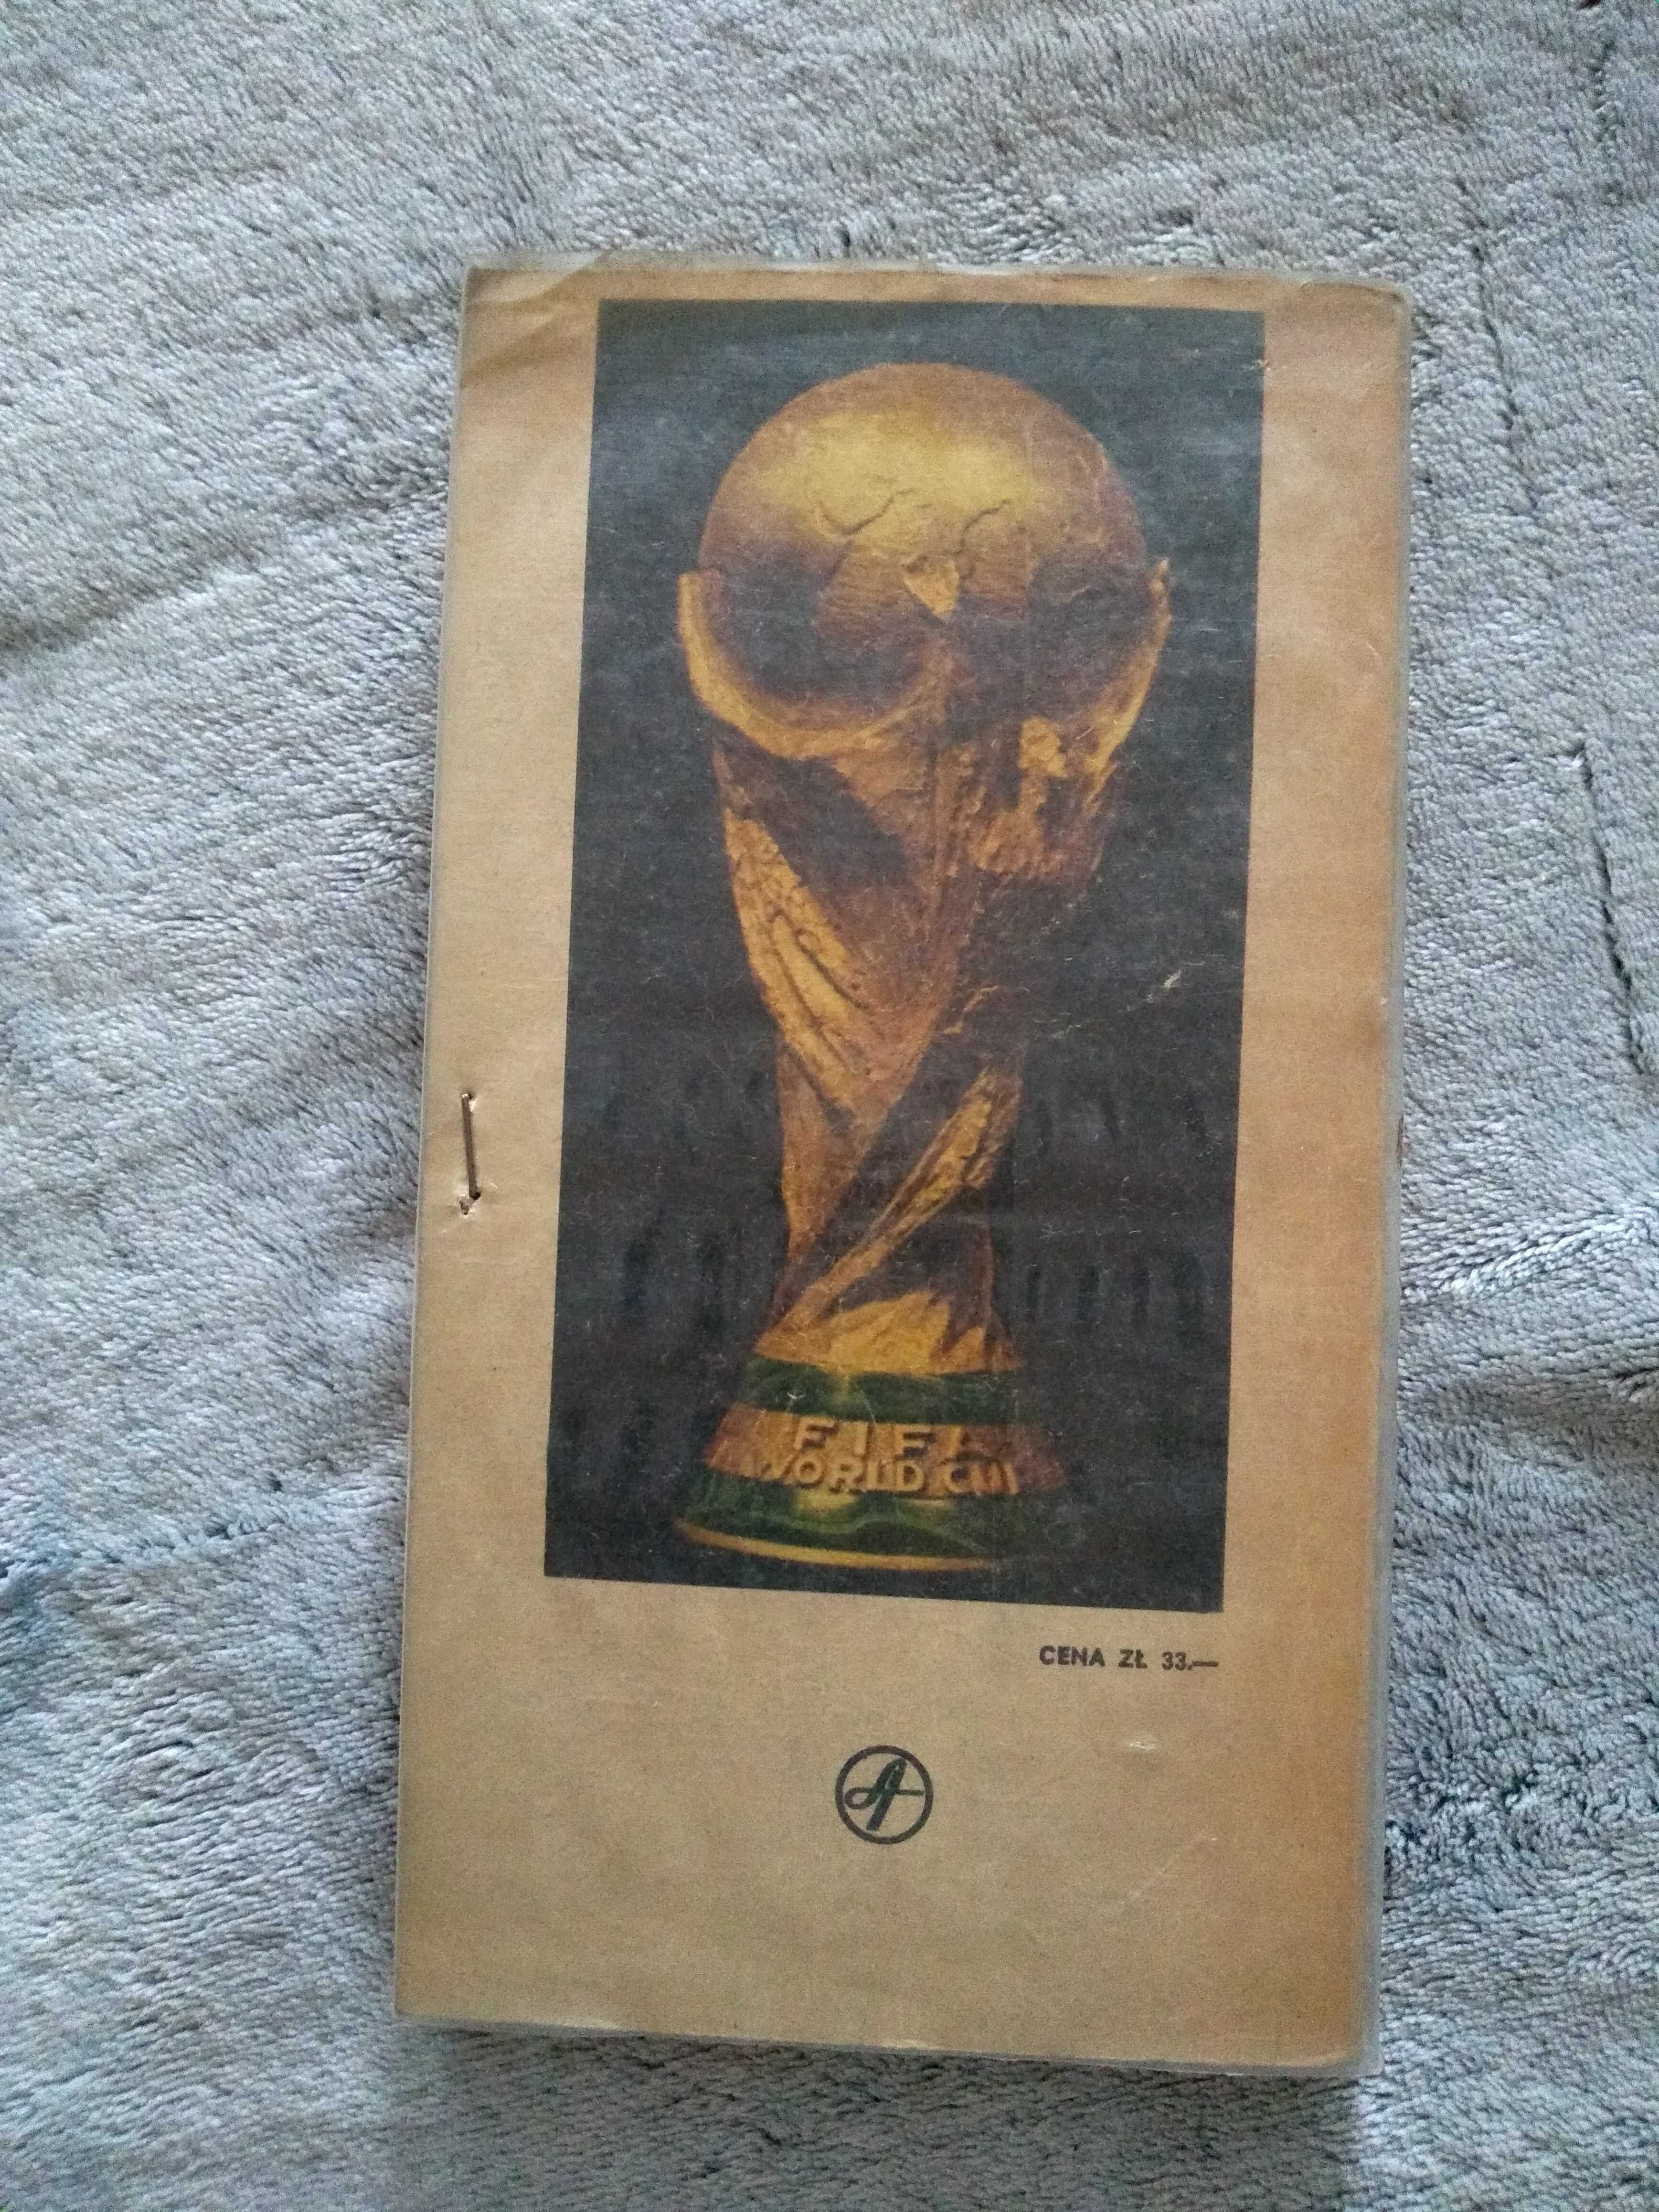 Mundial'78 - A.Gowarzewski, G.Stański książka o piłce nożnej 1978 rok